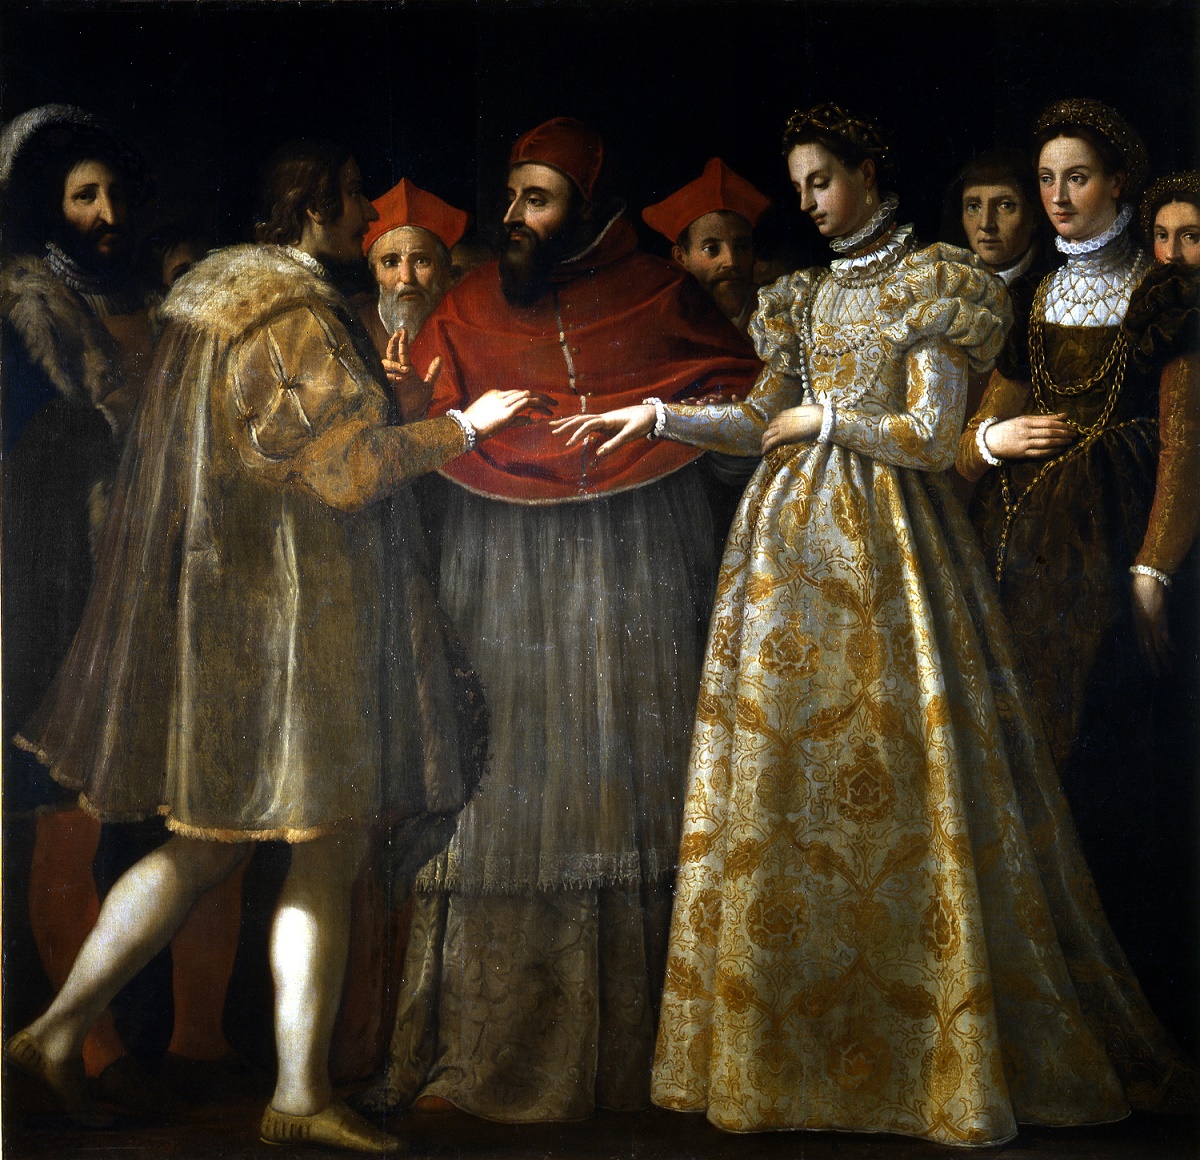 Il matrimonio di Caterina de' Medici - Jacopo Chimenti detto Empoli